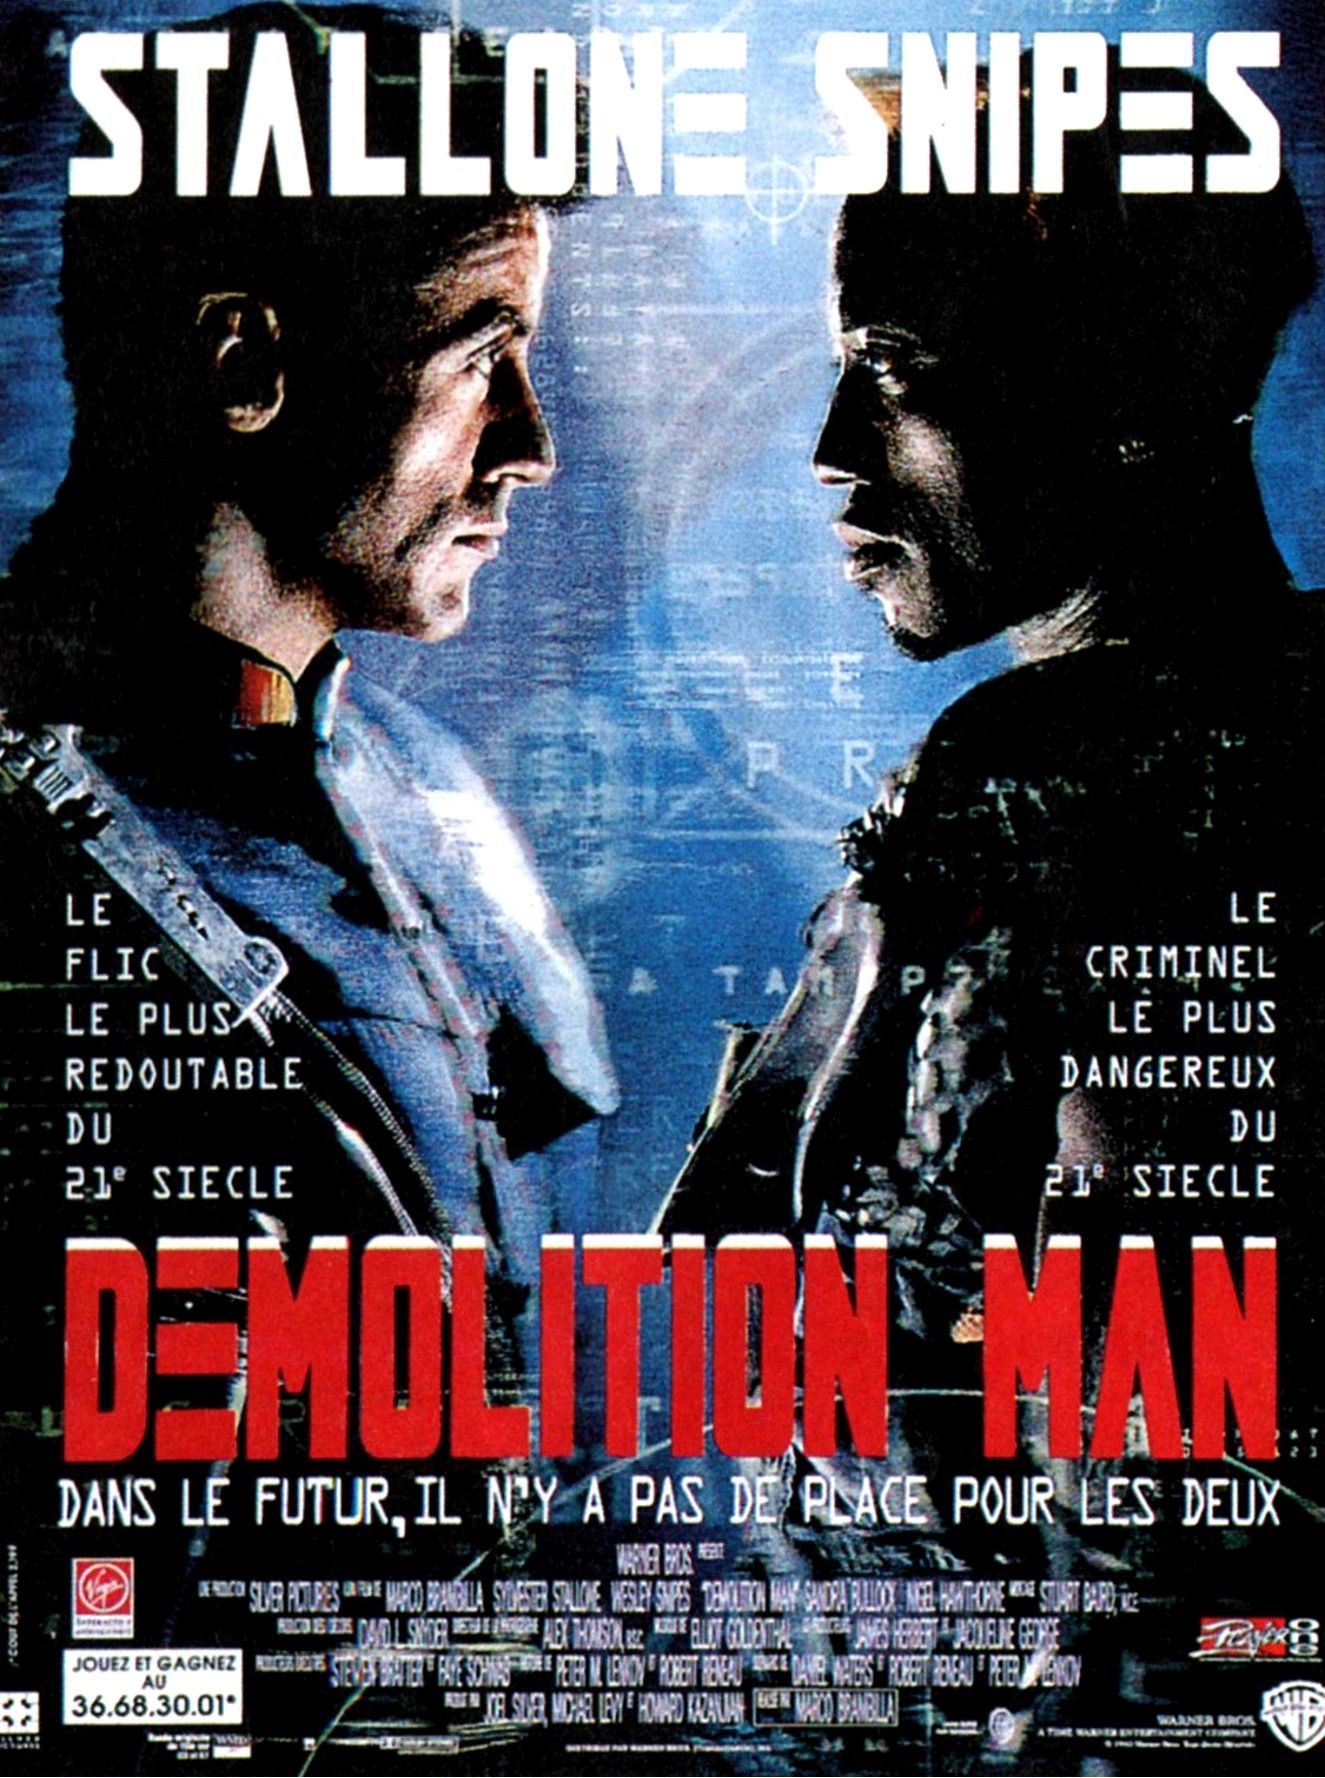 download demolition man film version